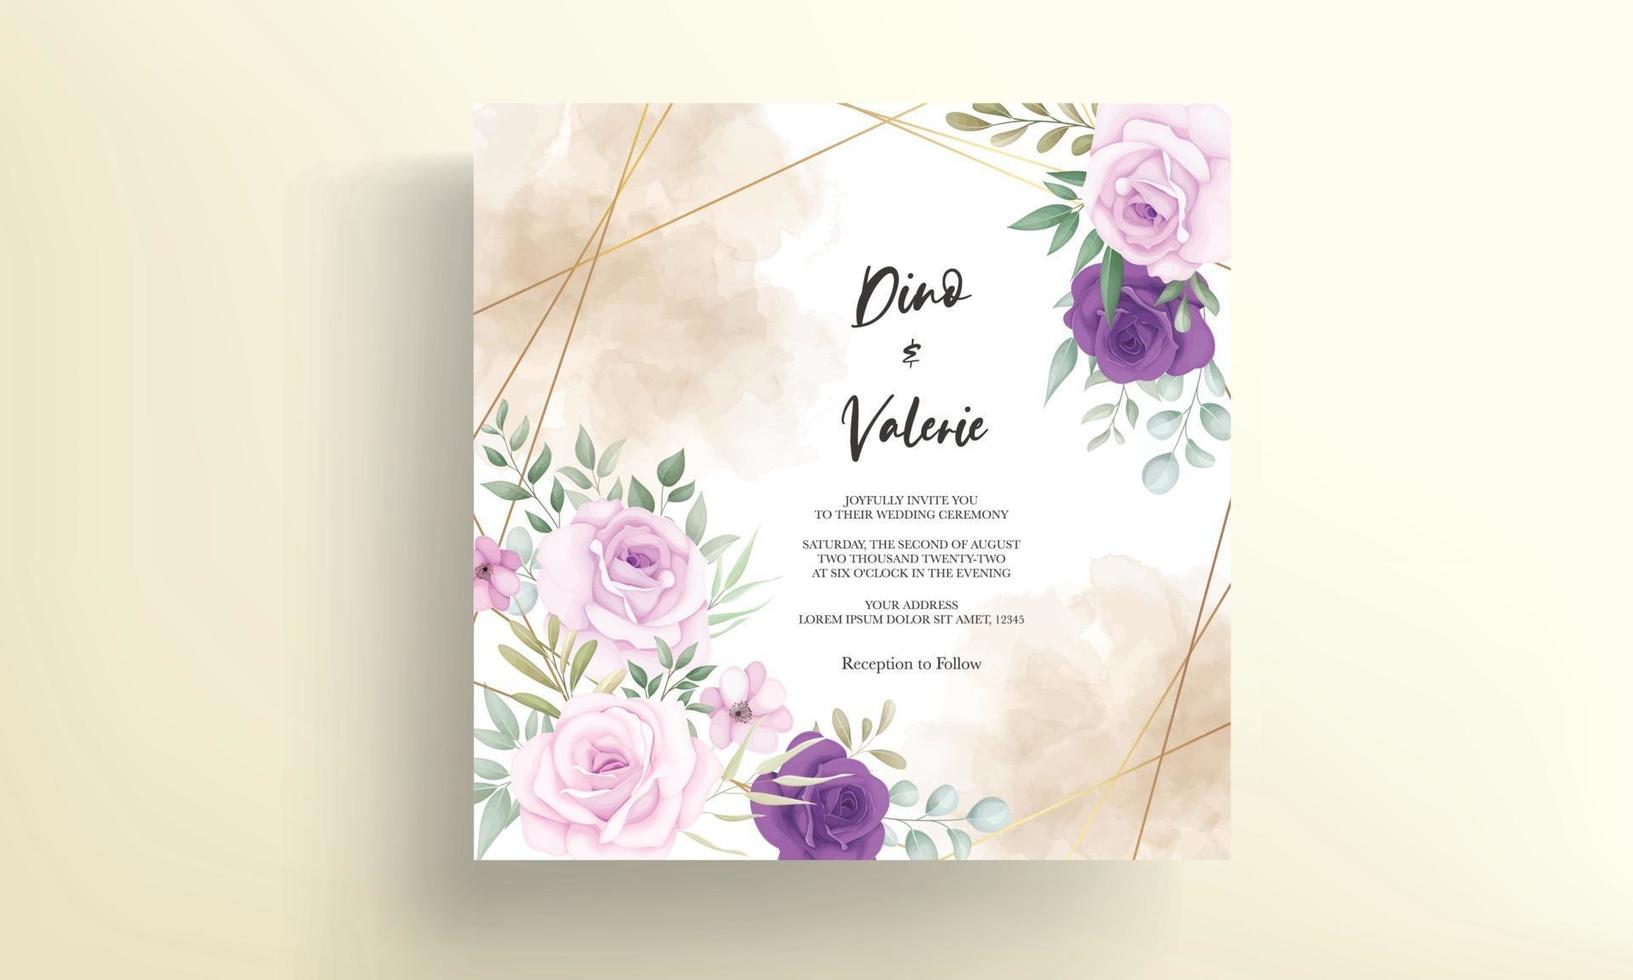 carte d'invitation de mariage élégante avec de belles décorations florales vecteur